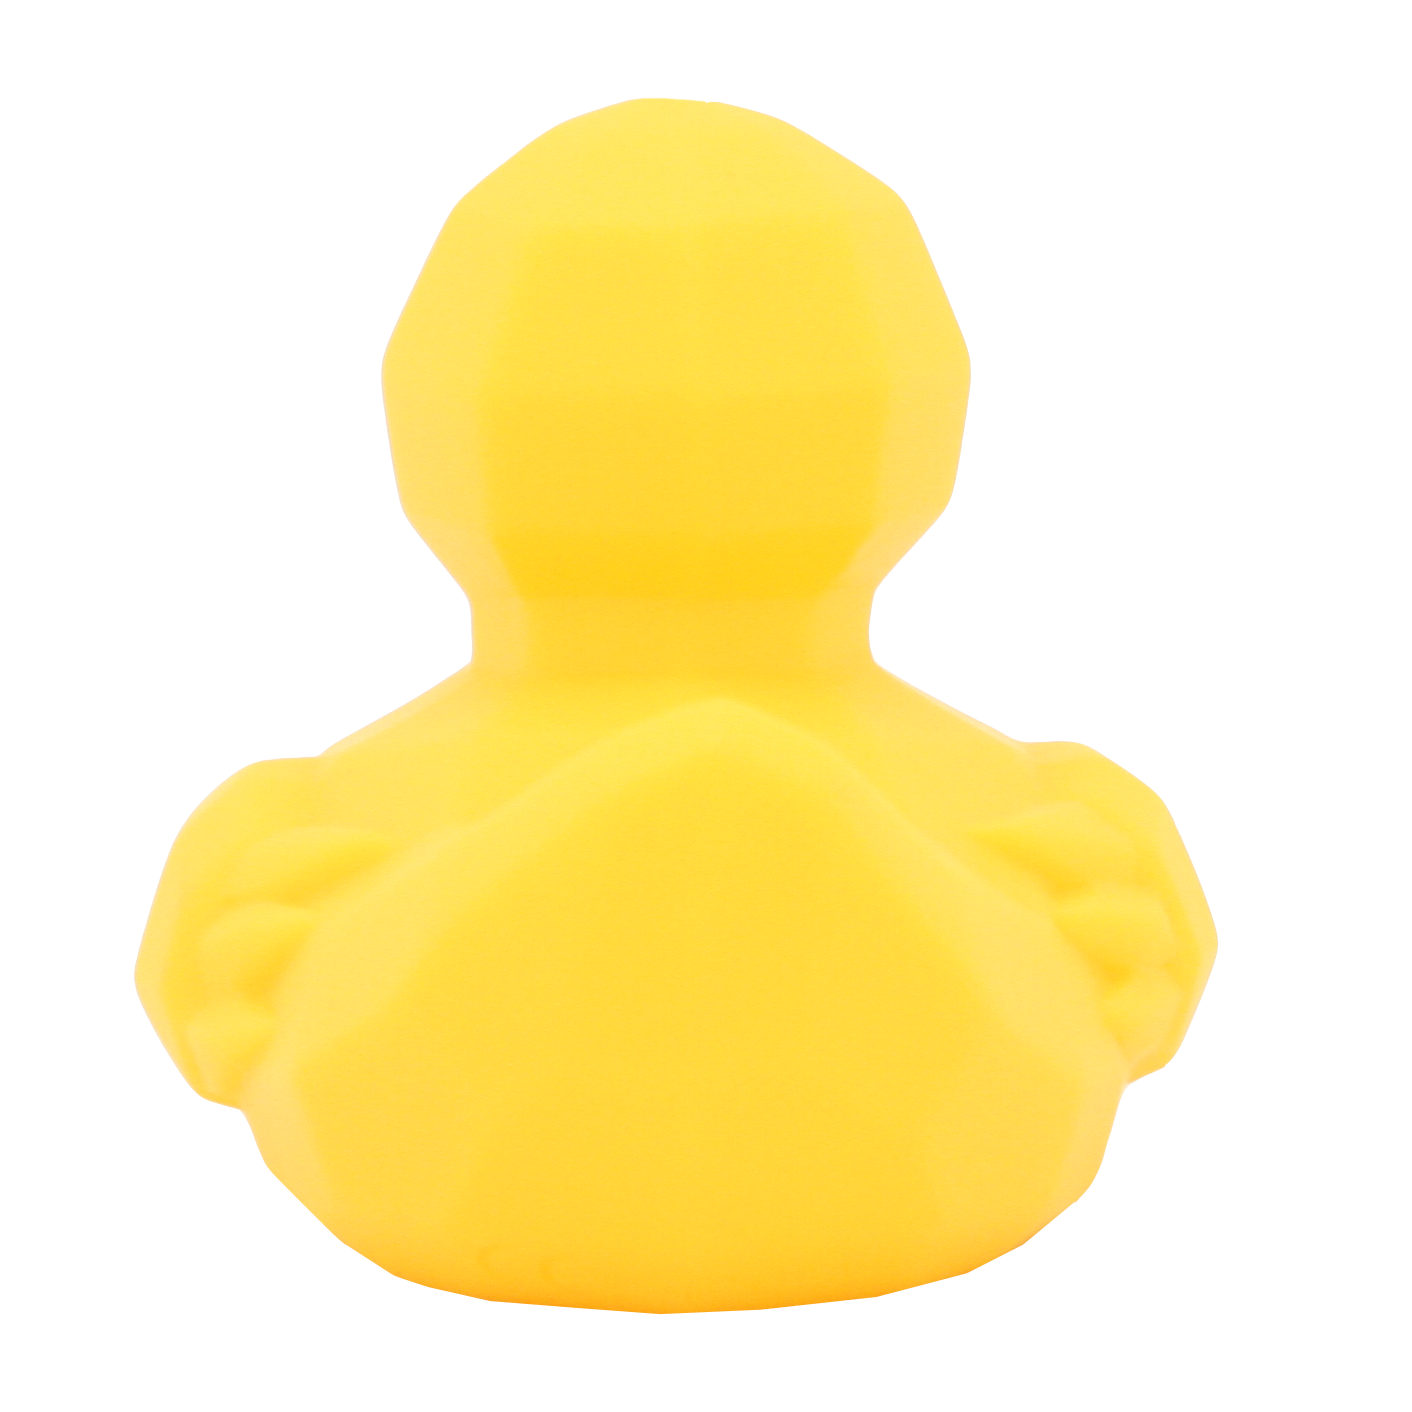 Diamond duck